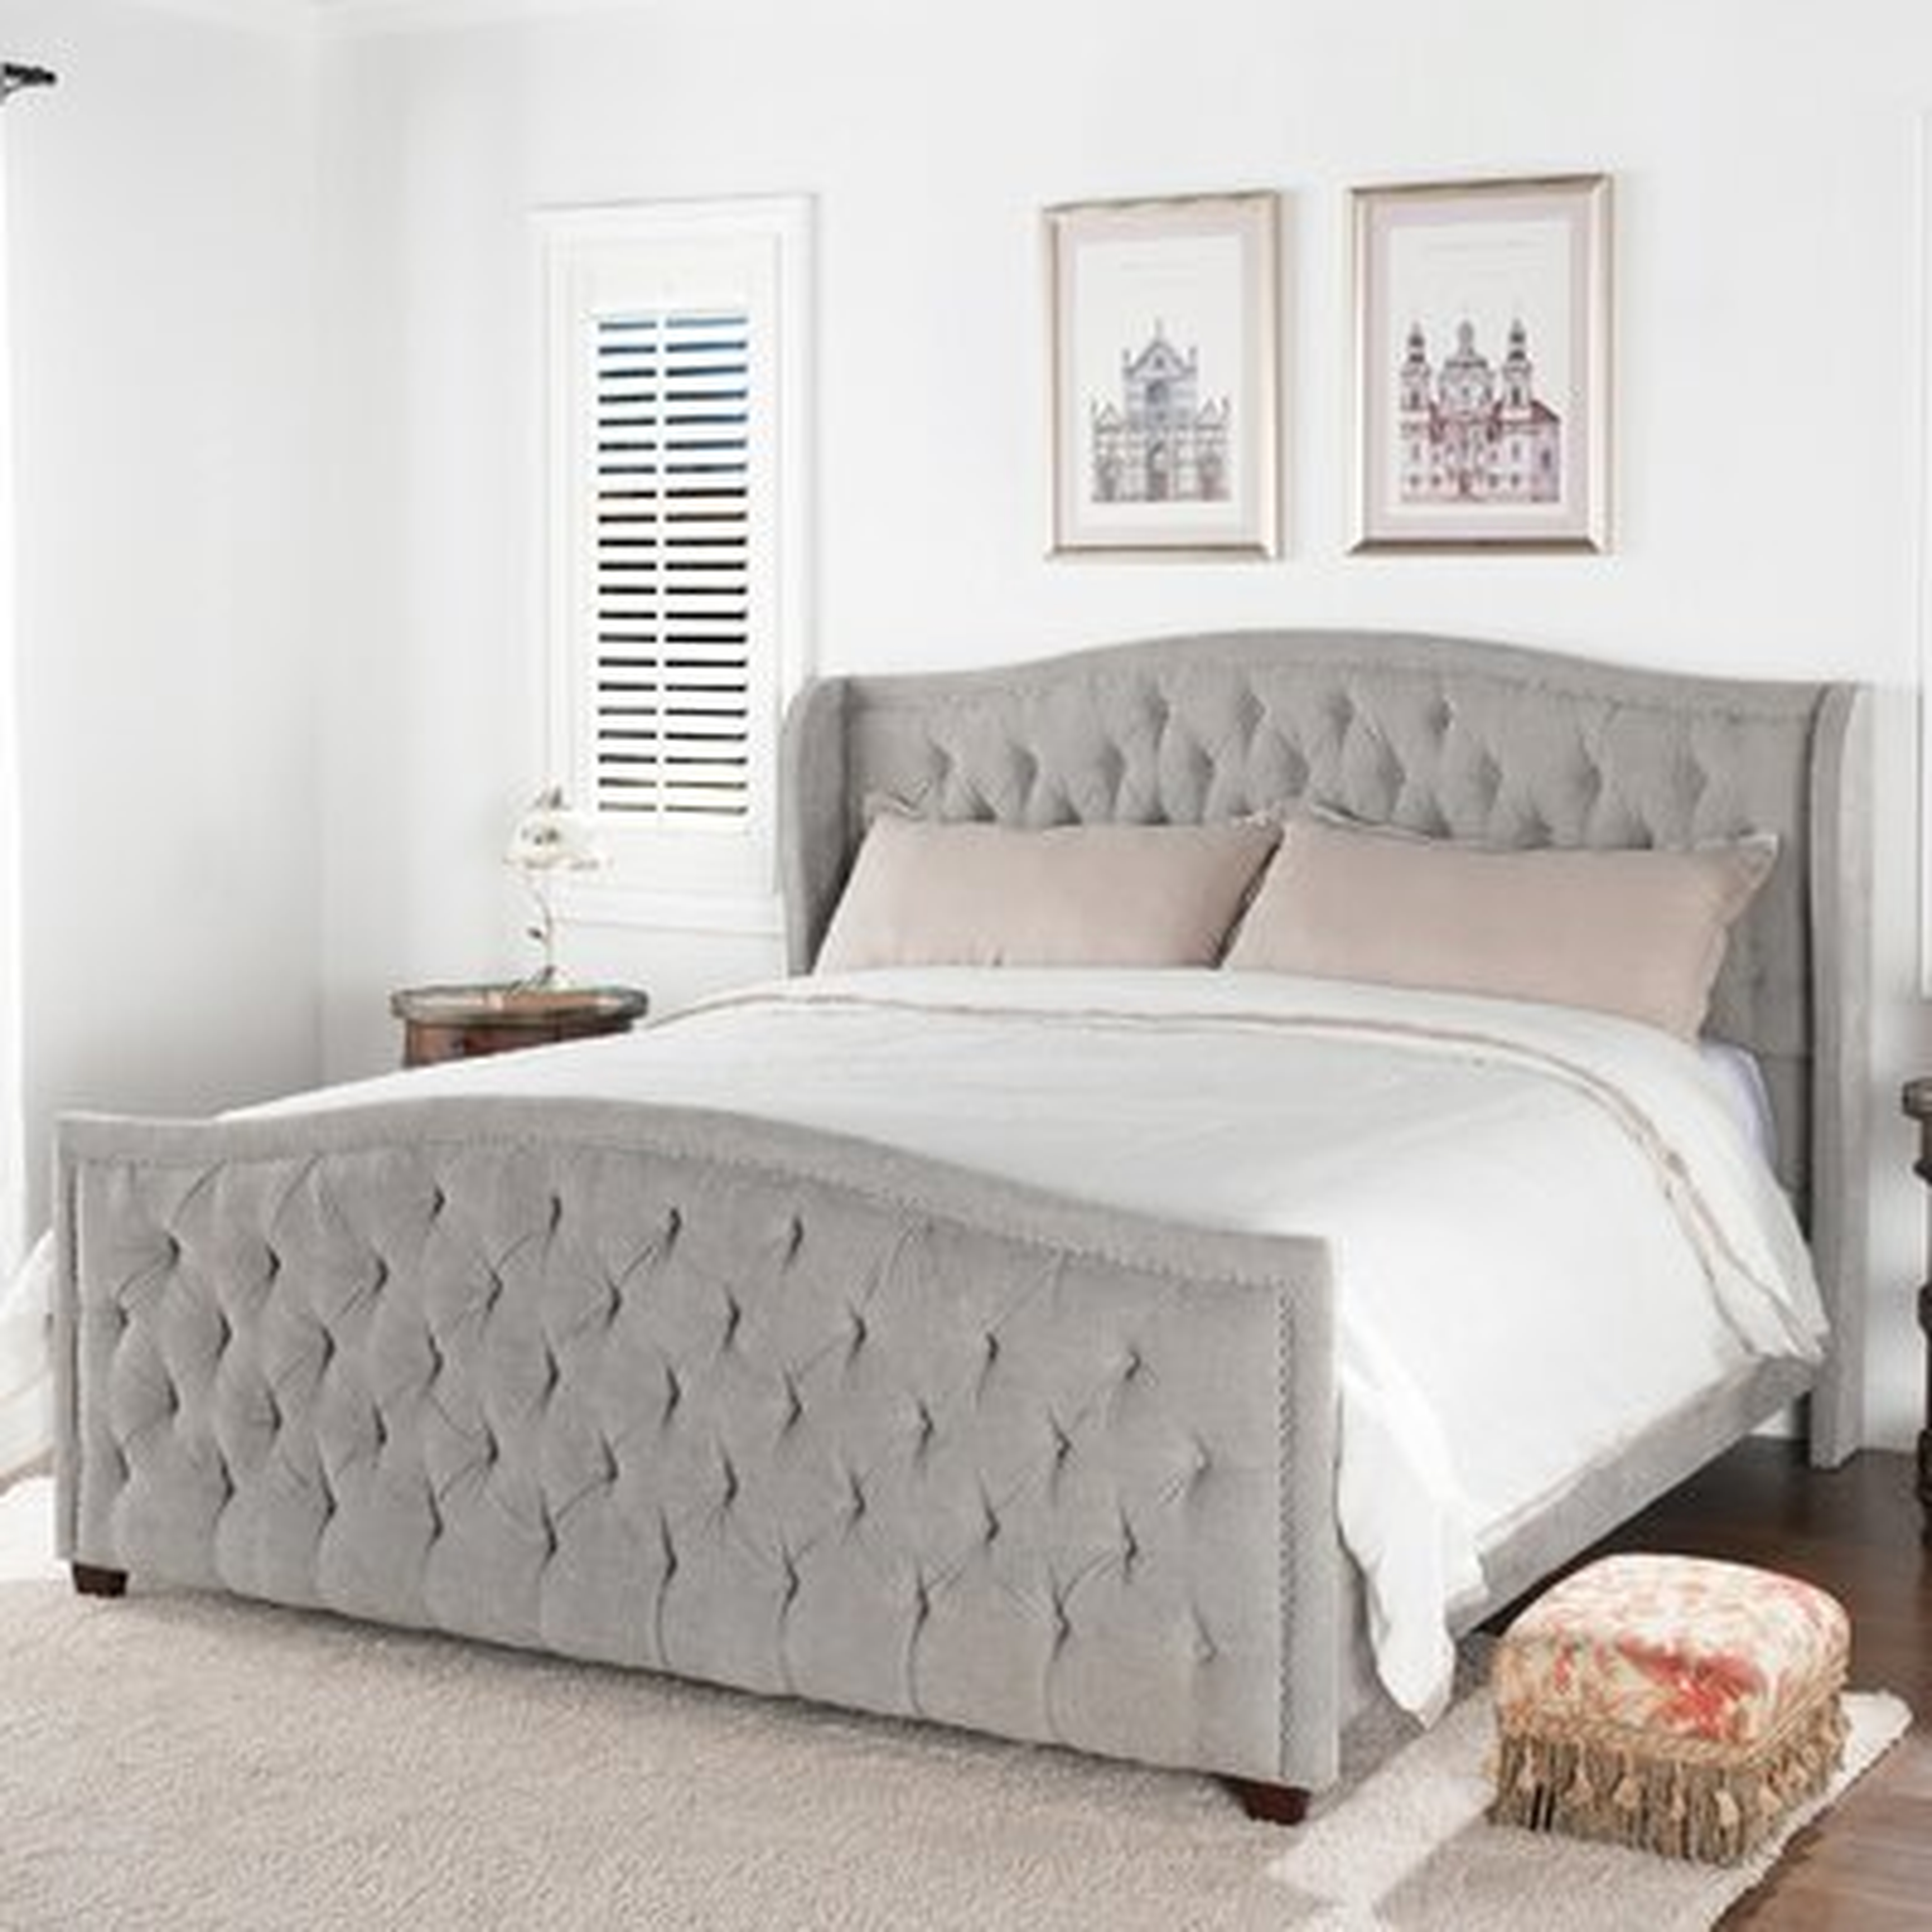 Vidette Tufted Upholstered Standard Bed - Wayfair